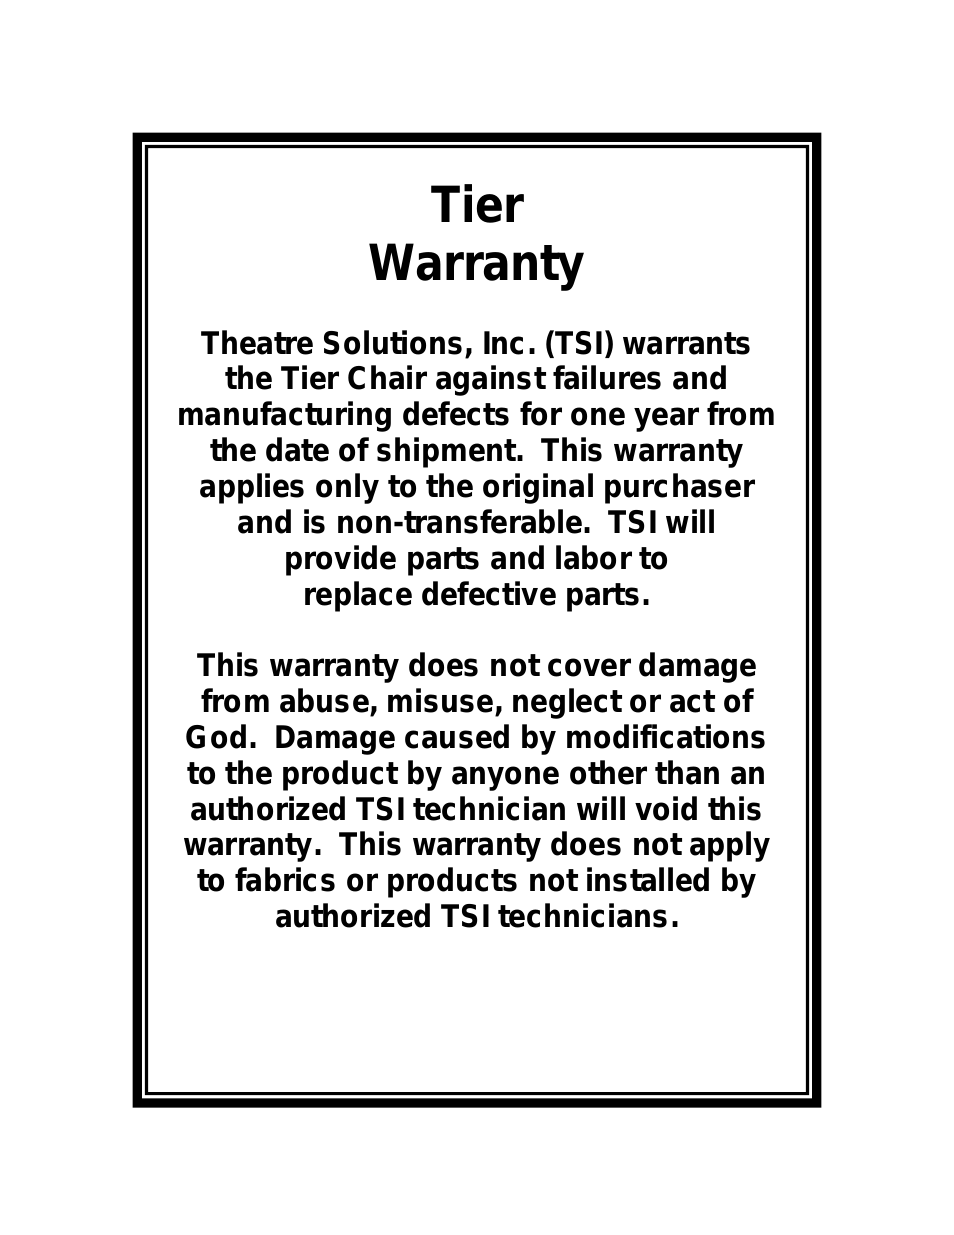 Tier Warranty